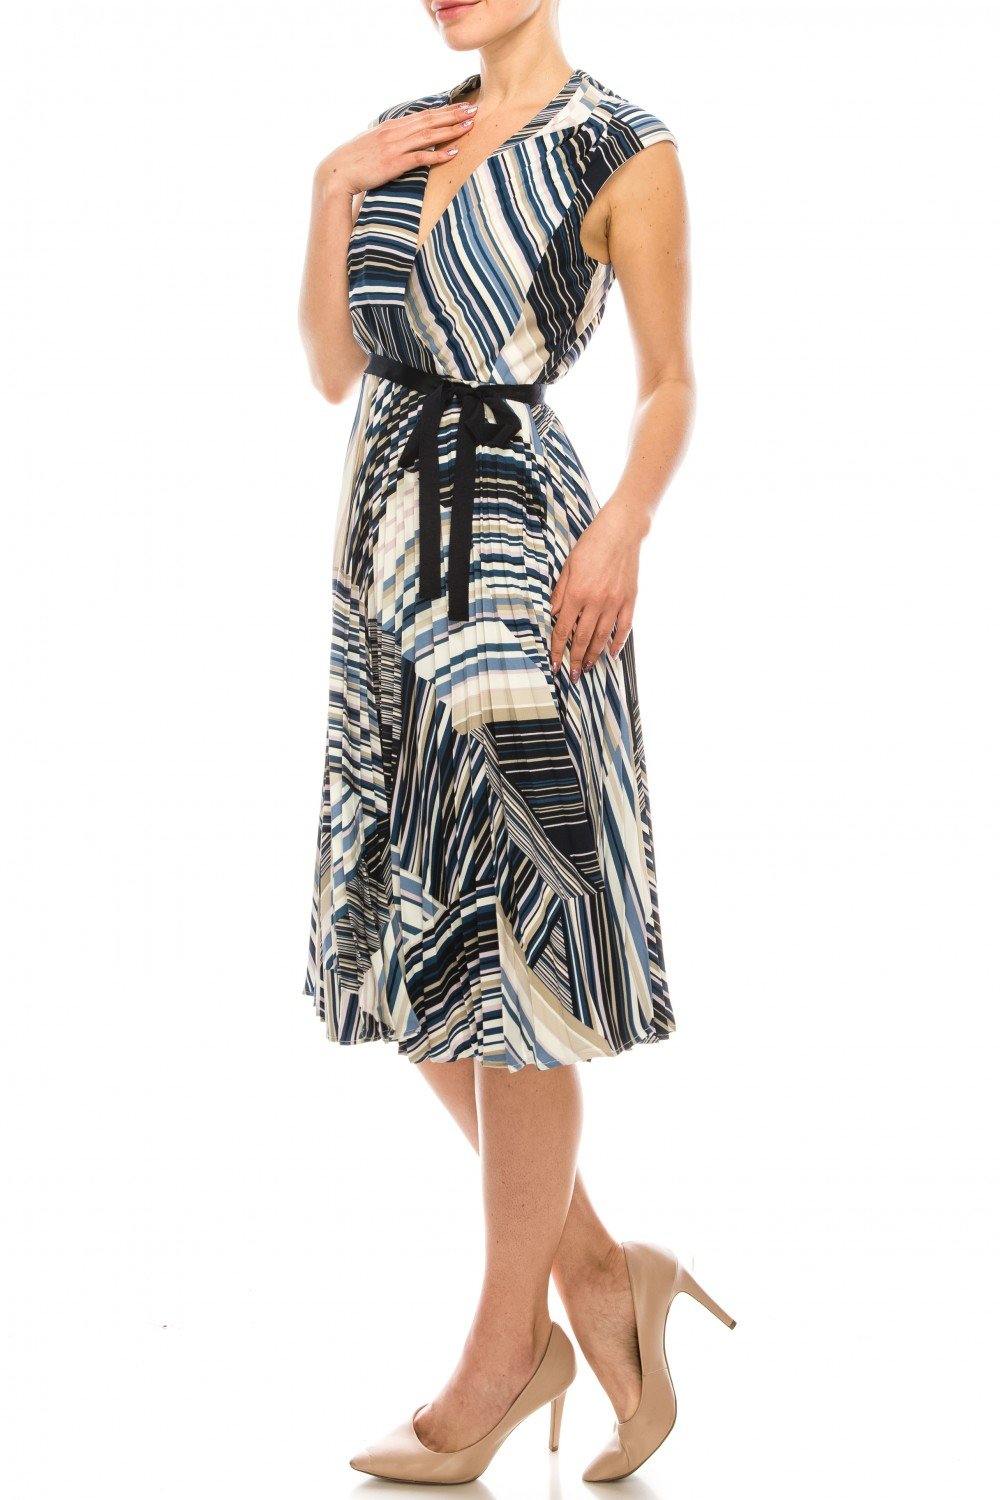 Maison Tara Striped Pleated A-Line Midi Dress - The Dress Outlet